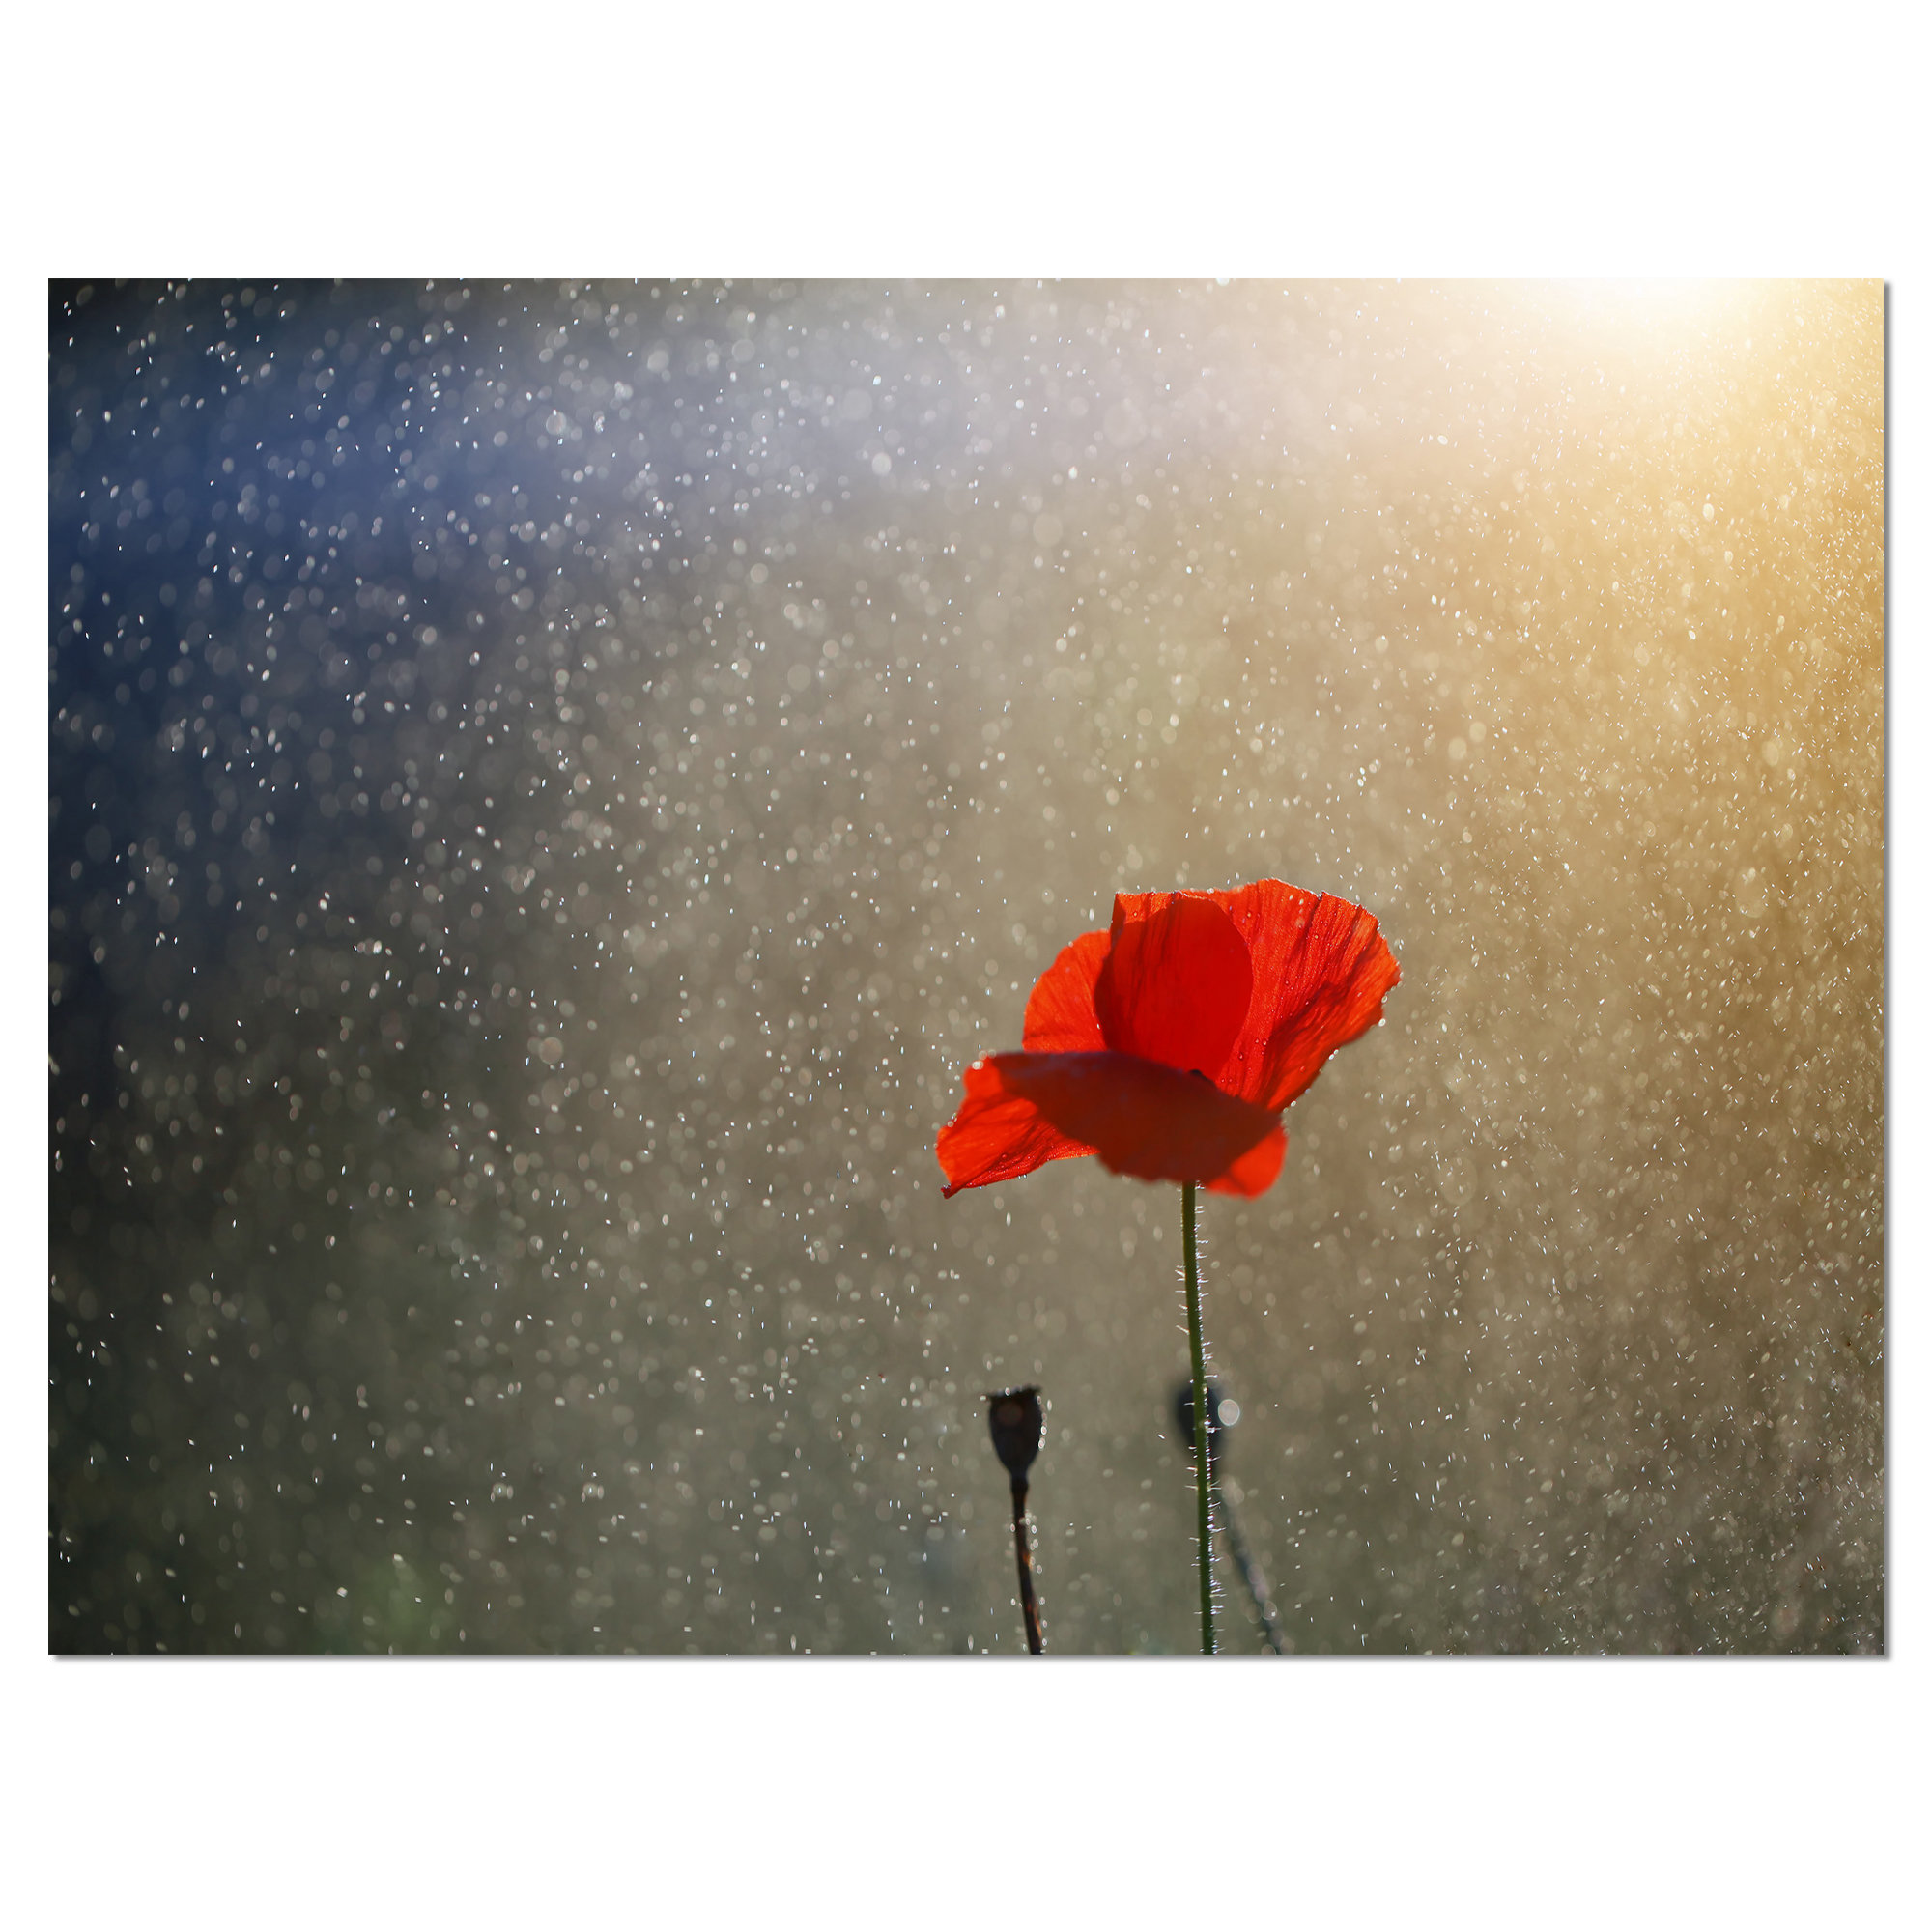 DesignArt 'Lone Red Puppy Flower under Lights' Photographic Print on ...